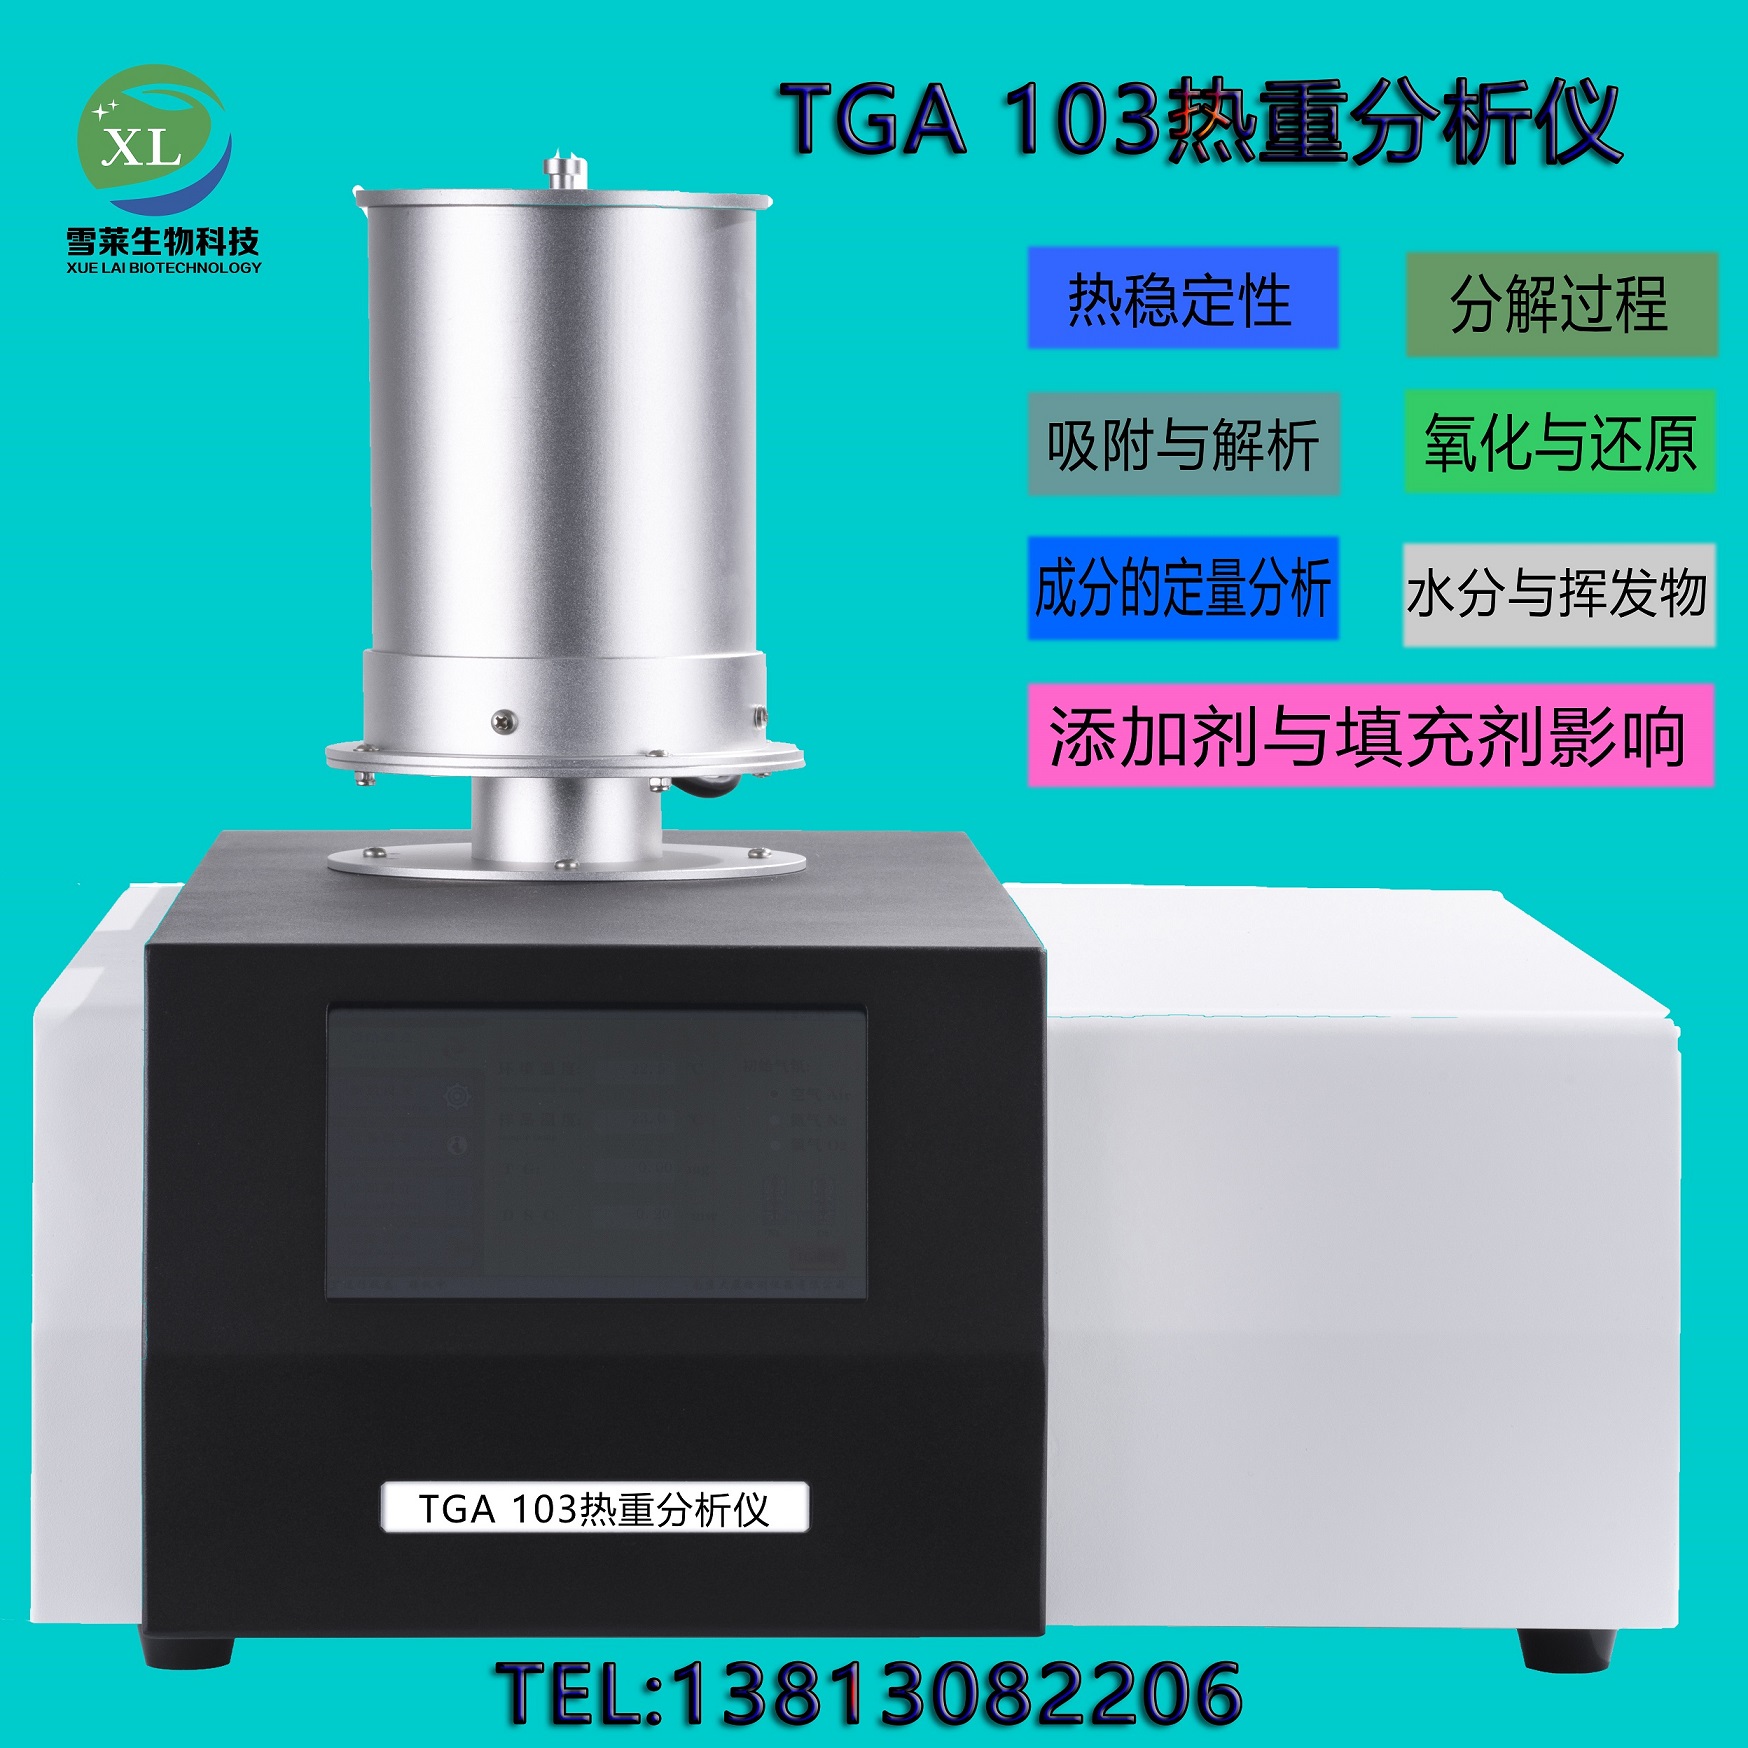 TGA 103 热重分析仪 南京雪莱生物科技有限公司